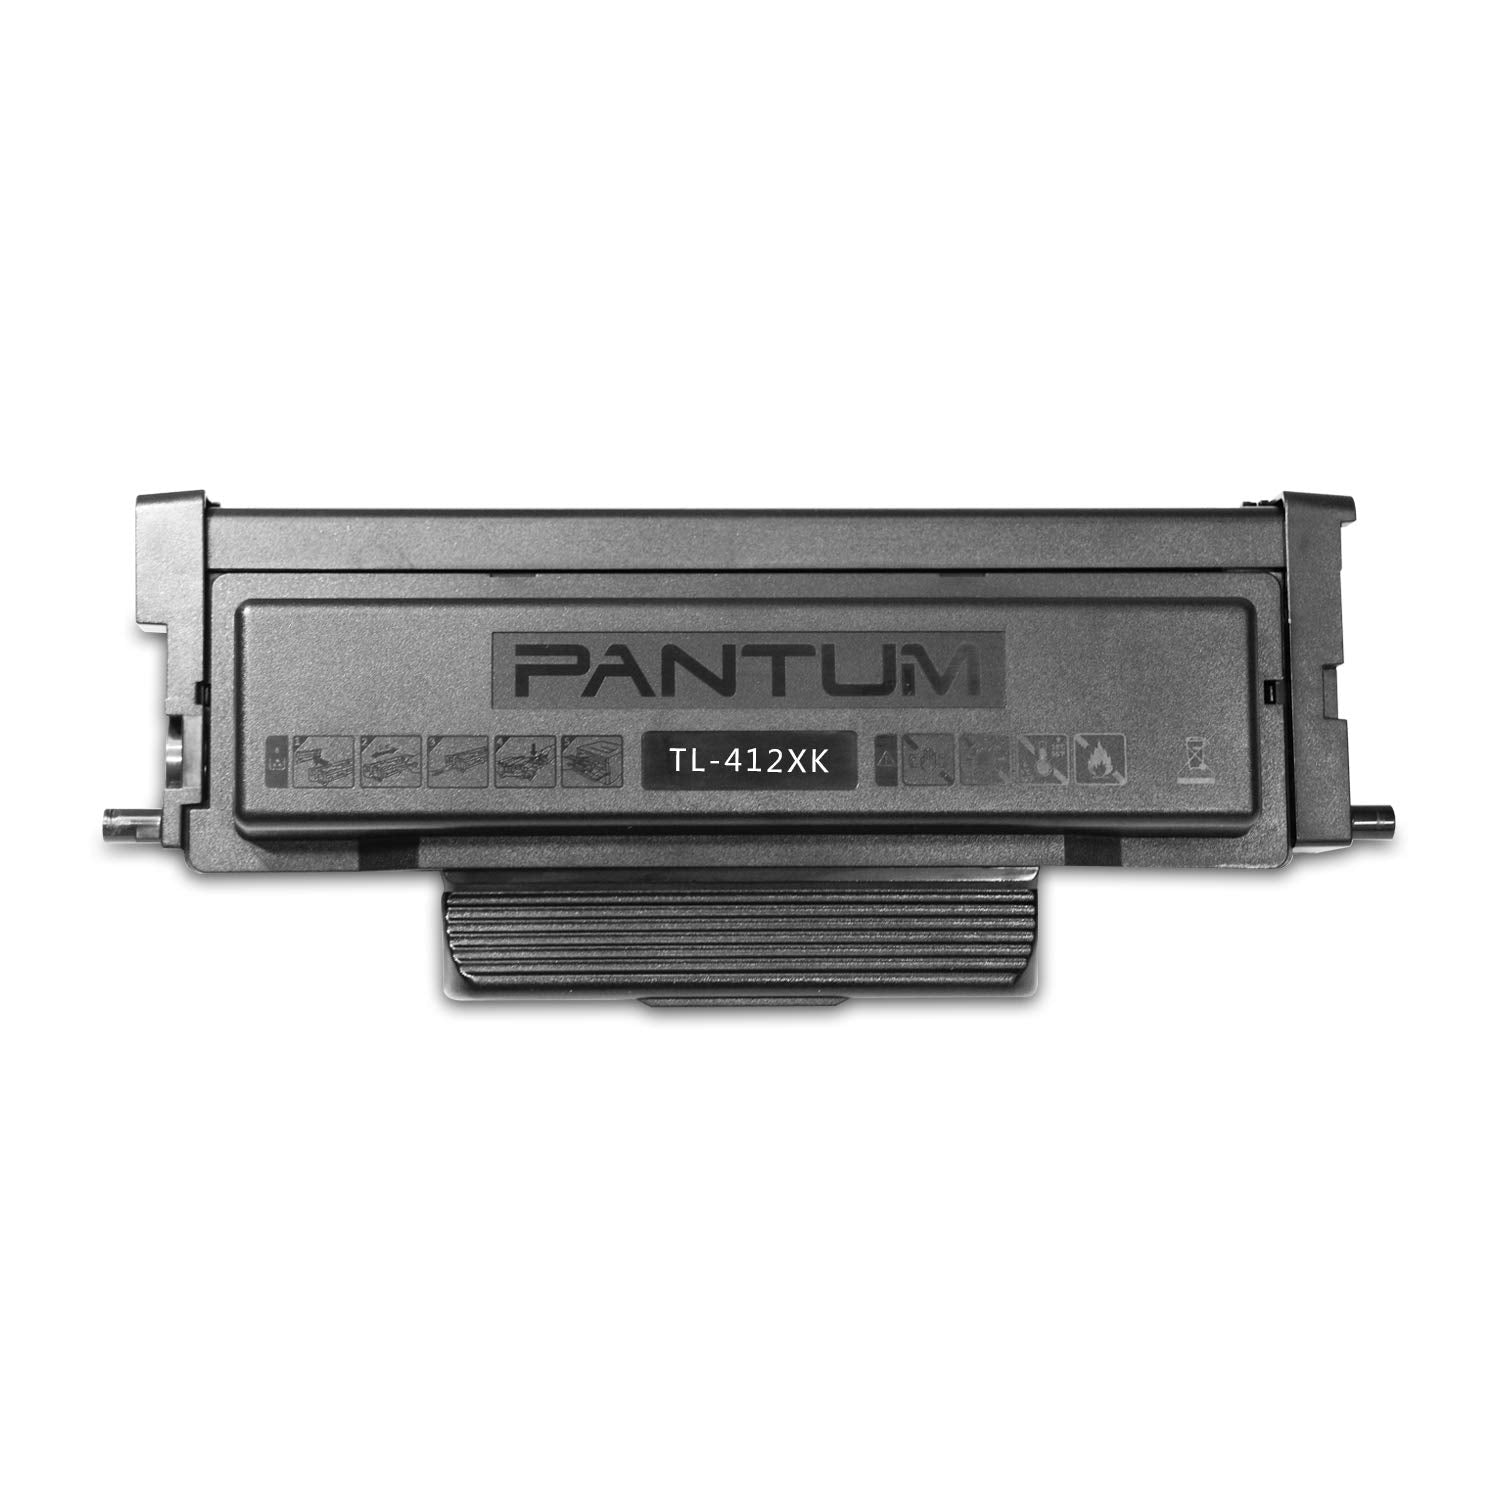 Pantum TL-412K / TL-412HK / TL-412XK / DO-412K  Toner (Black and White)